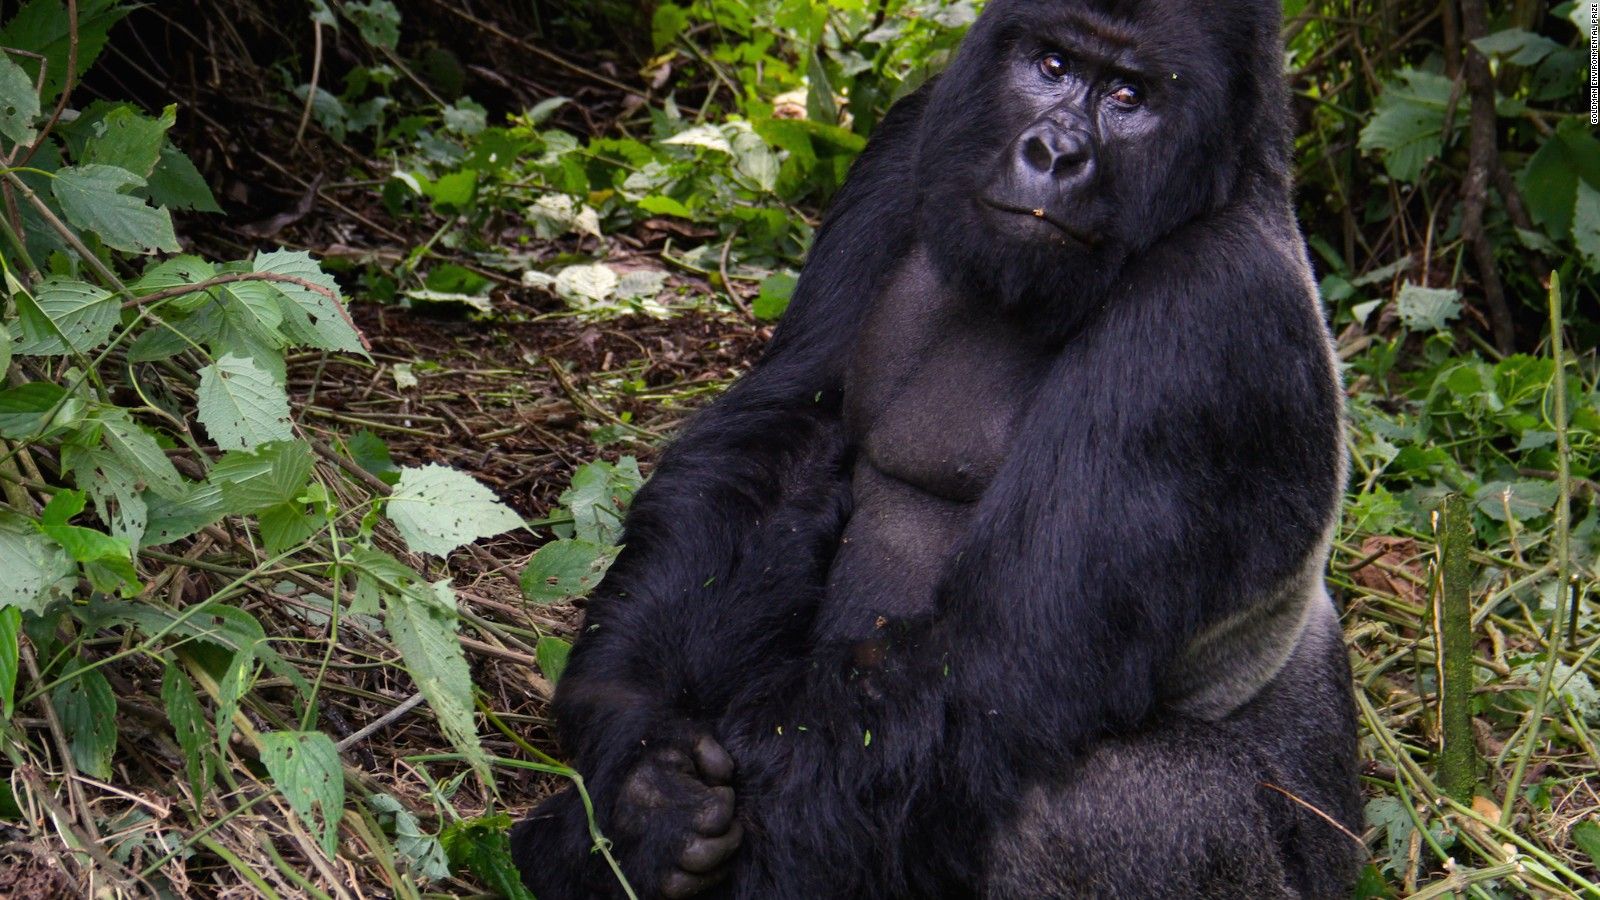 Virunga's gorilla rangers risk armed rebels and poachers